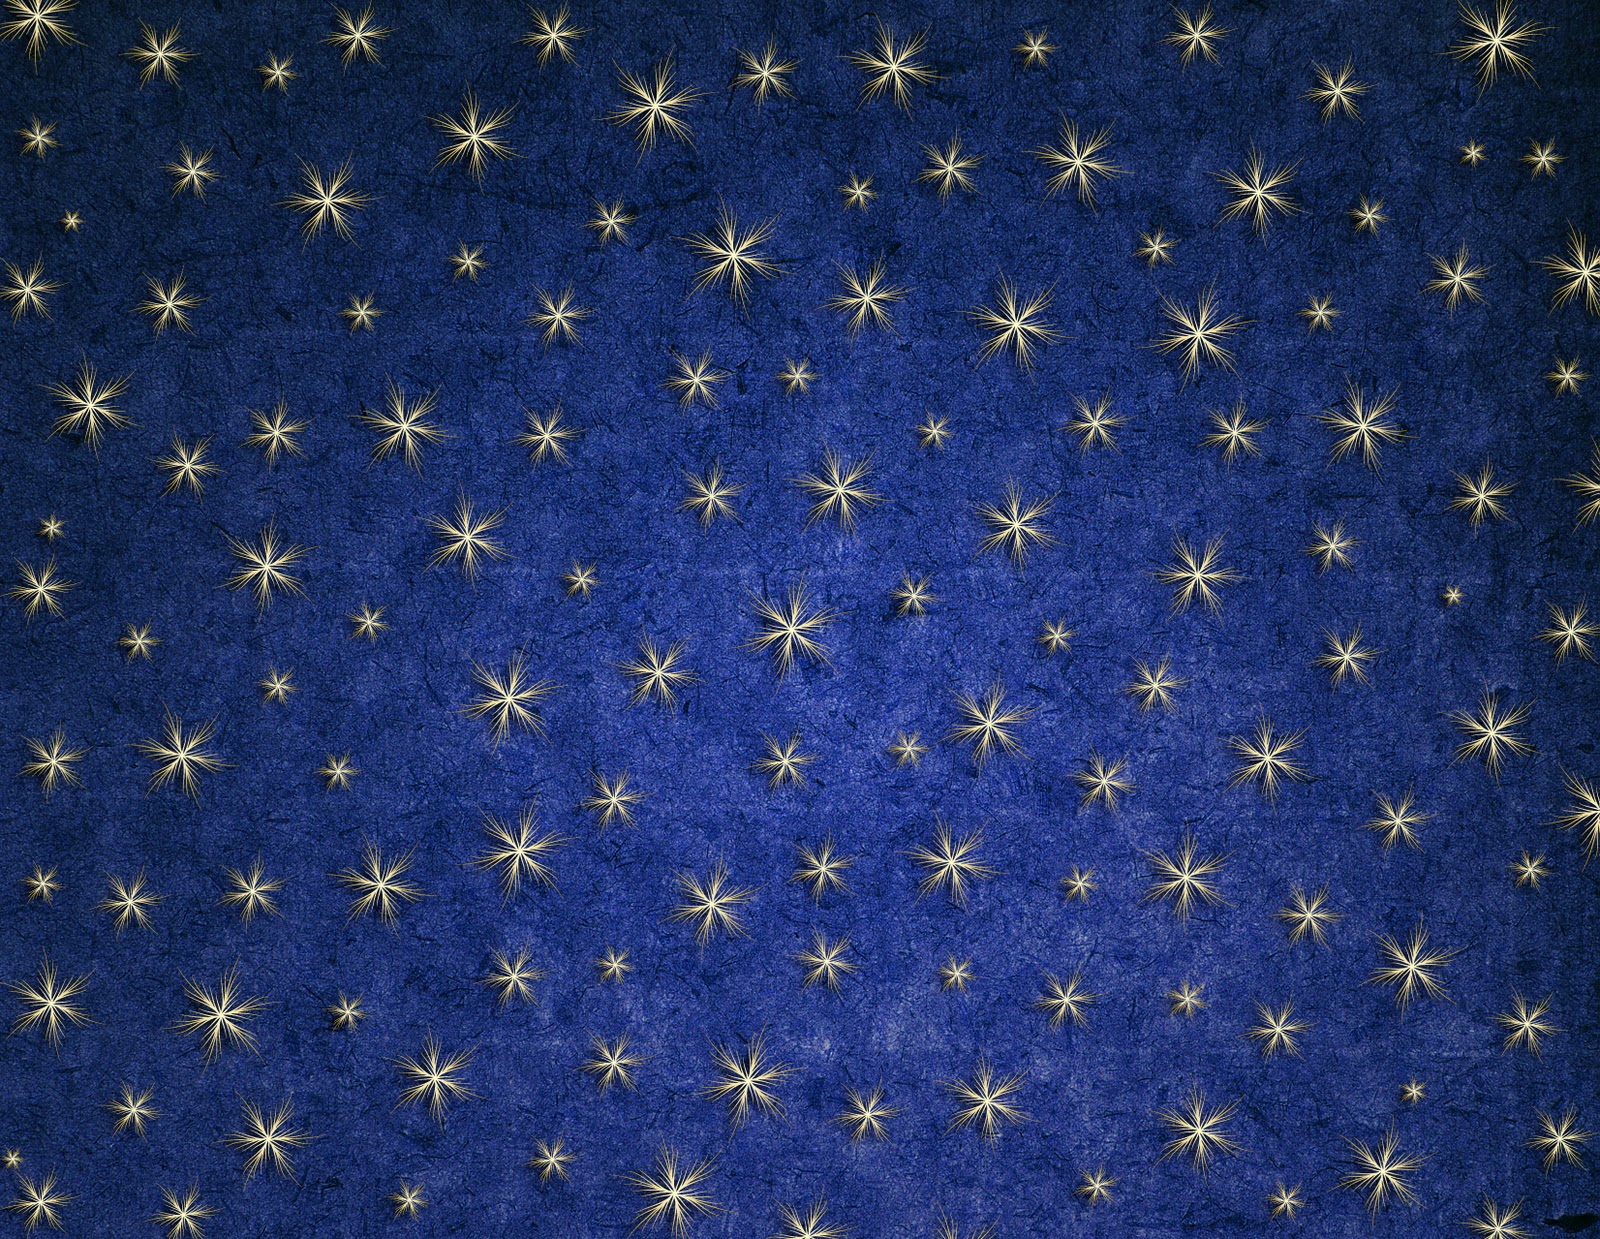 По темному небу золотым узором звезд написано. Ткань с золотыми звездами. Синий фон со звездами. Синяя ткань с золотыми звездами. Ткань со звездочками.